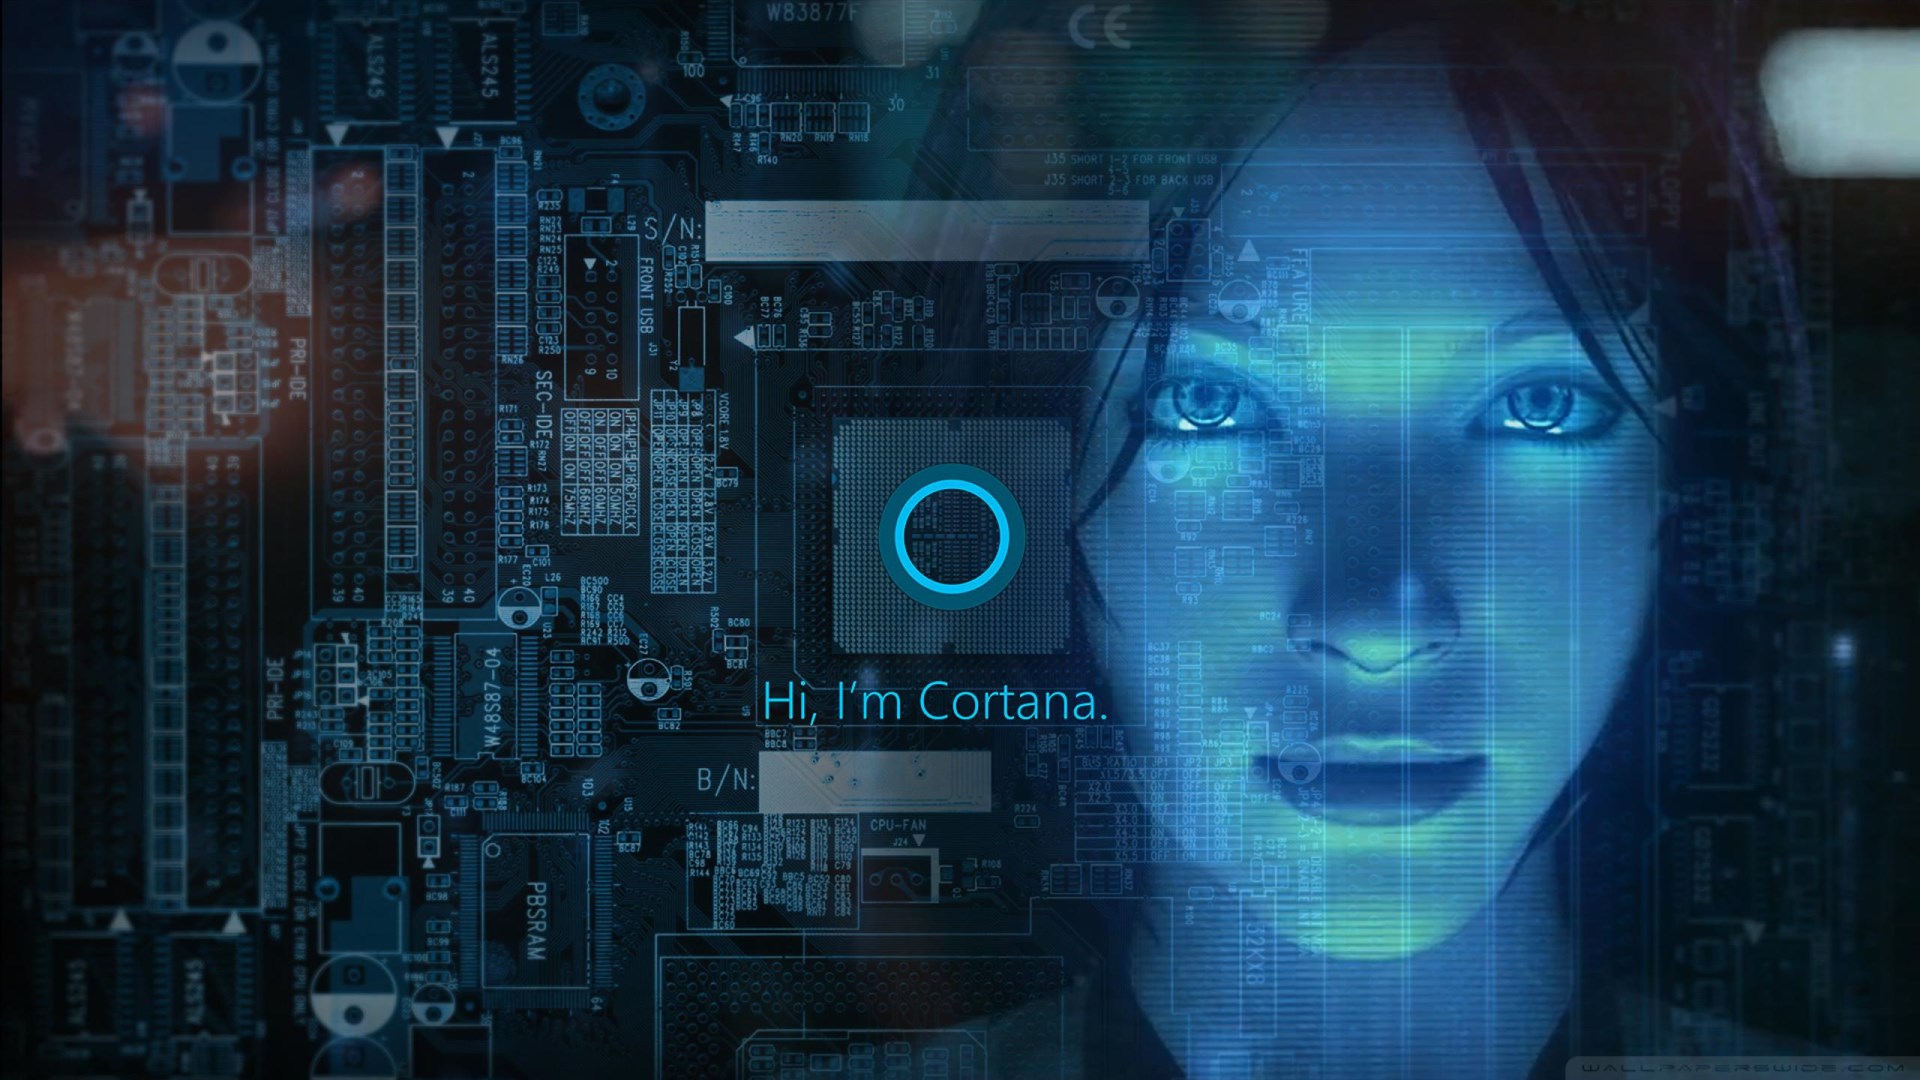 图片展现了一位女性形象的数字助手，背景是电路板，她的名字“Cortana”显示在屏幕上，体现了高科技和人工智能的融合。